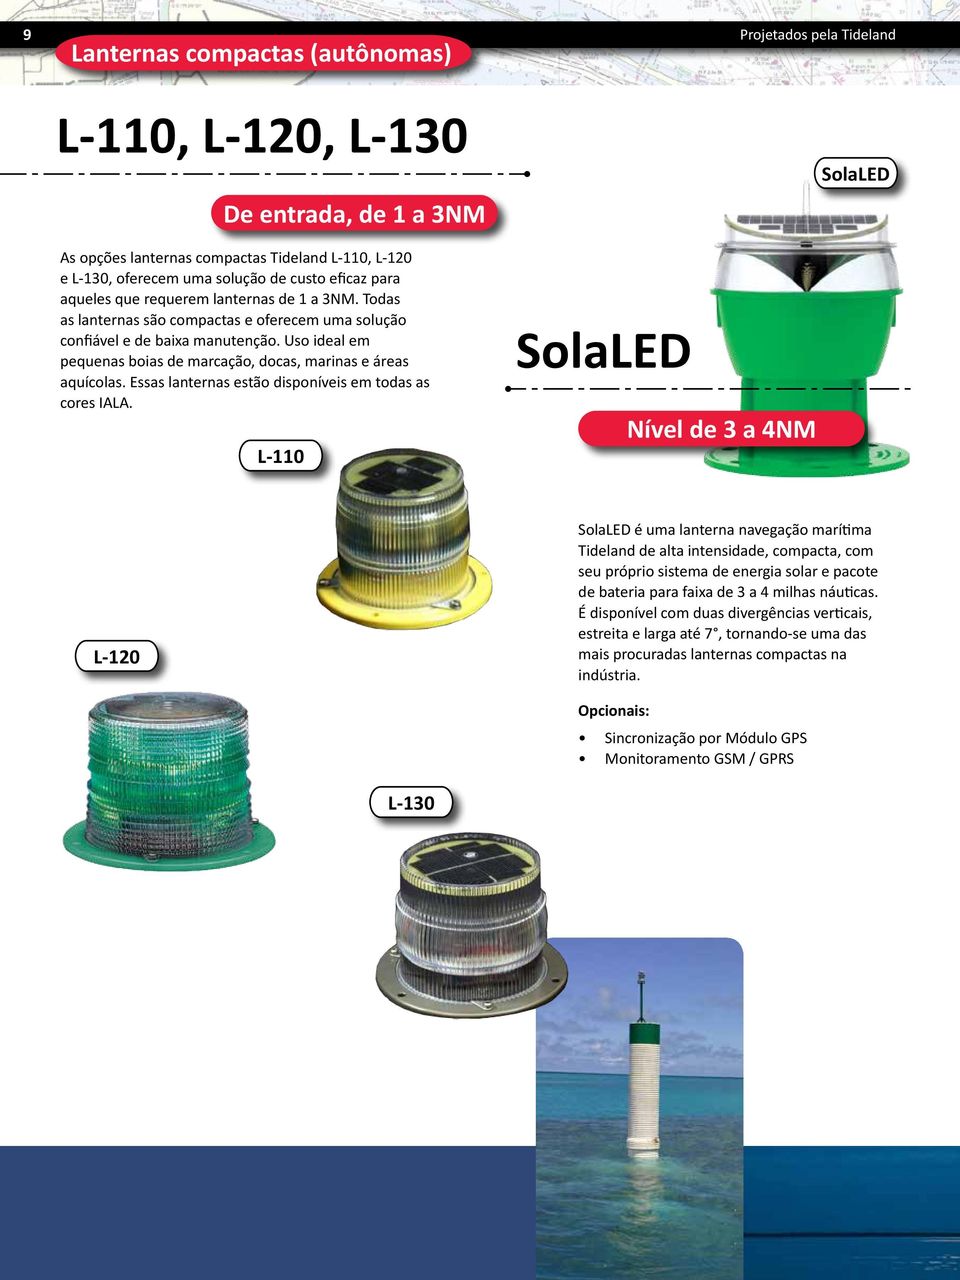 Uso ideal em pequenas boias de marcação, docas, marinas e áreas aquícolas. Essas lanternas estão disponíveis em todas as cores IALA.